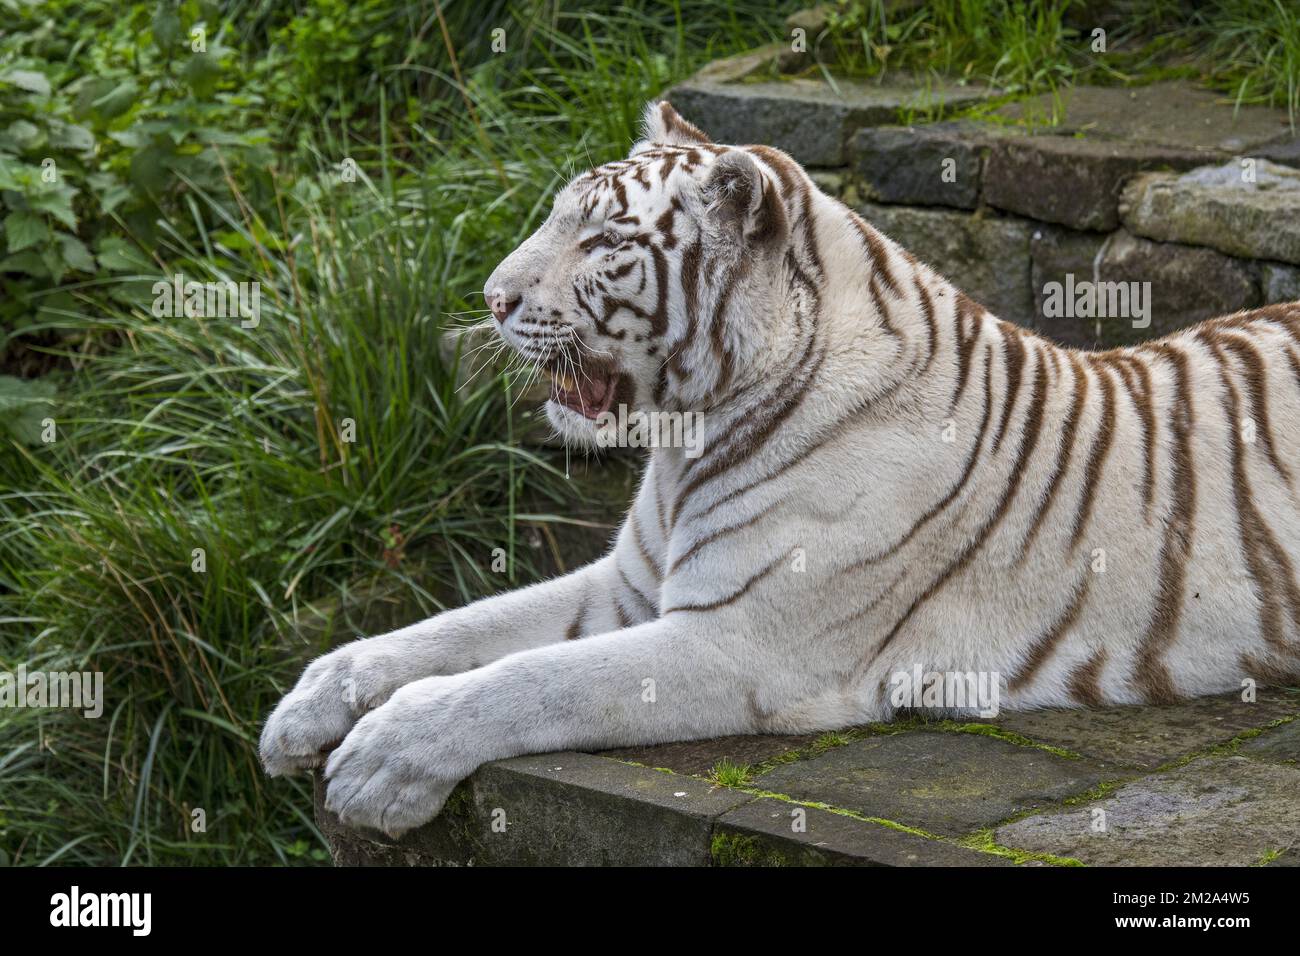 Tigre bianca / tigre sbiancata (Panthera tigris) variante di pigmentazione della tigre bengala, originaria dell'India | Tigre bianco (Panthera tigris) 20/09/2017 Foto Stock